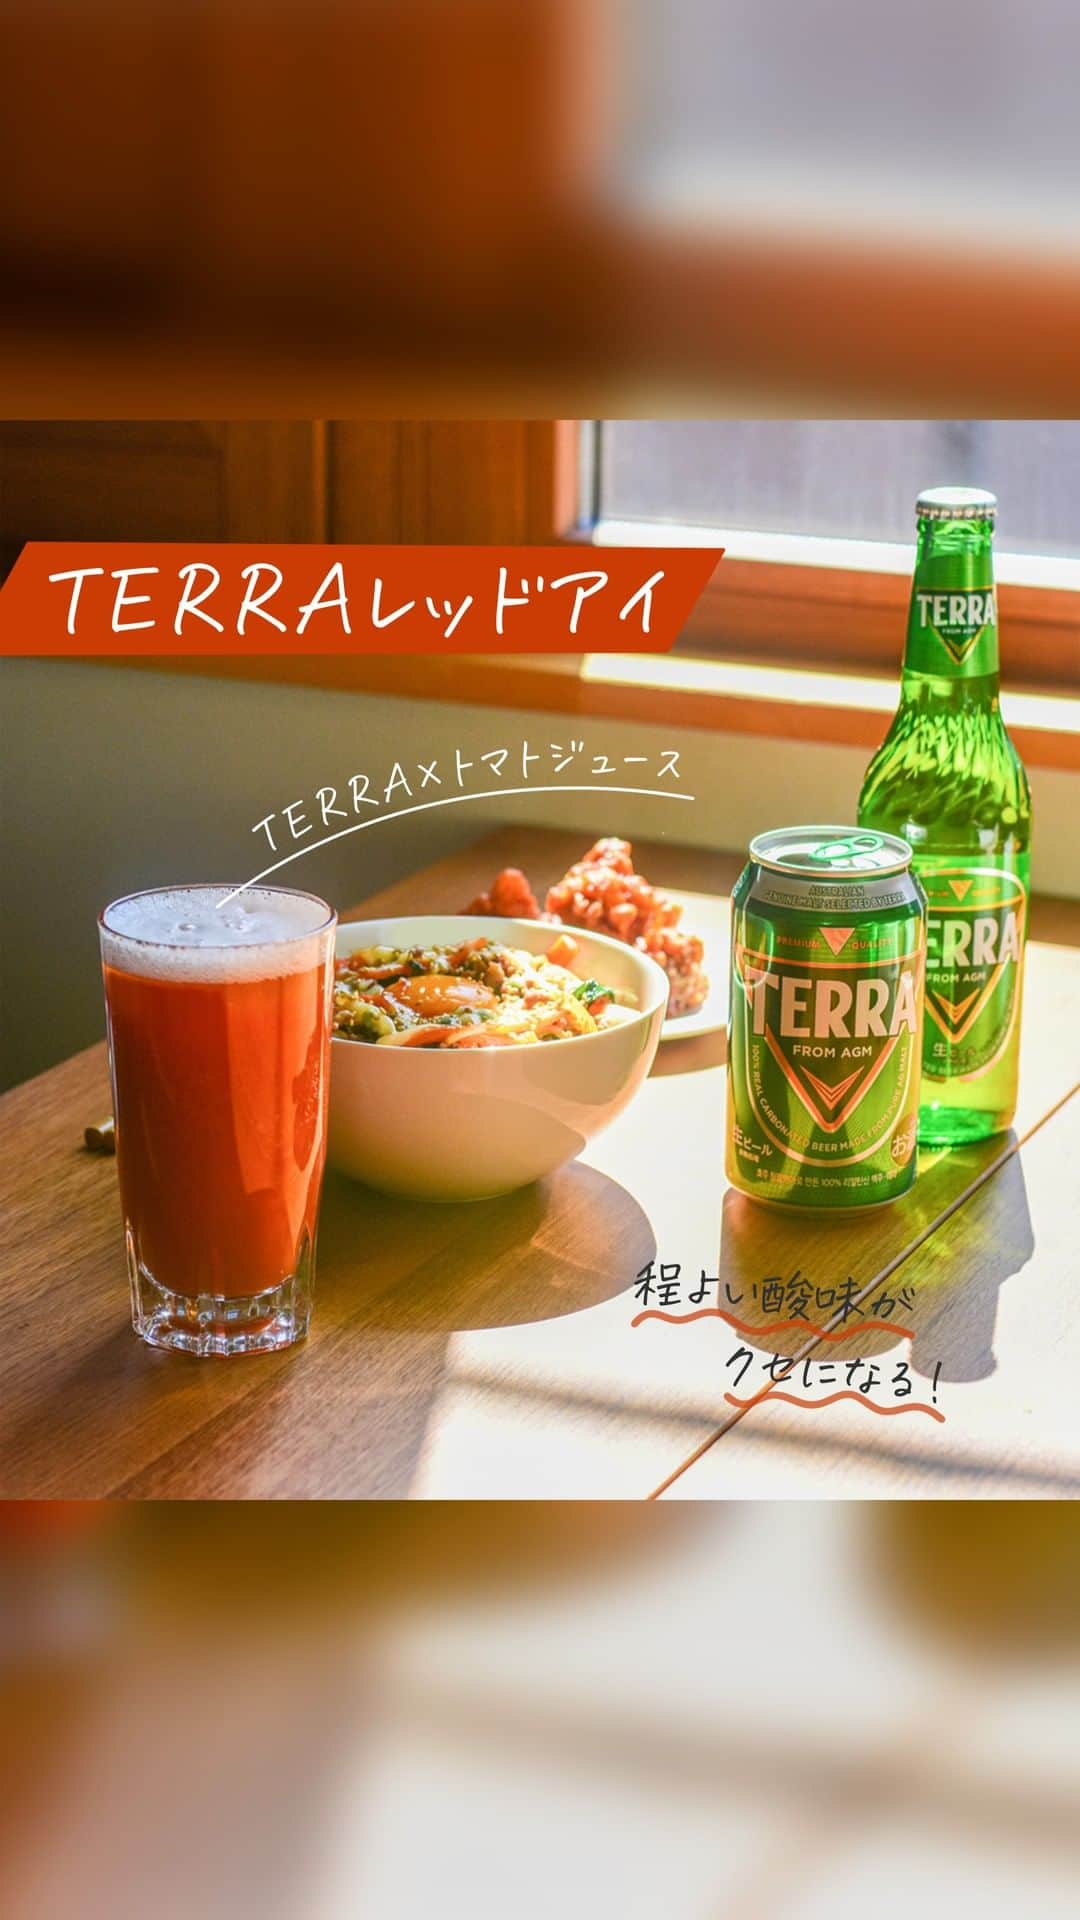 JINROのインスタグラム：「... TERRA（テラ）を使ったスッキリカクテルをご紹介！☕  ＼TERRAレッドアイ☕／ TERRAとトマトジュースを混ぜた、スパイシーで野菜感たっぷりのカクテルです！  レシピは TERRA「1」に対して有塩トマトジュースを「1」と、めちゃ簡単😍  もうちょっとトマト感強い方が好き！という方は トマトジュースの濃さをお好みで調整してみてください🍅  トマトの程よい酸味とさっぱりした味わいが特徴で飲みやすいと評判です😎  📍作り方 ①TERRAを入れる ②トマトジュースを入れる  #テラアレンジ ぜひ試してみてね🍺  ... JINRO公式アカウント🍻 チャミスル｜JINRO｜マッコリ｜TERRA @jinro_jinro  #JINRO #ジンロ #チャミスル #眞露 #terra #テラ # #TERRAビール #ソジュ #酒スタグラム #韓国好きな人と繋がりたい #チャミスルトルネード #チャミスルでチャンしよ #飲みやすい #飲酒たぐらむ #お酒好きと繋がりたい #韓国料理大好き #韓国ごはん #韓国料理 #韓国酒 #カクテル🍸 #カクテルレシピ #お家bar #輸入ビール #ビール好きとつながりたい」